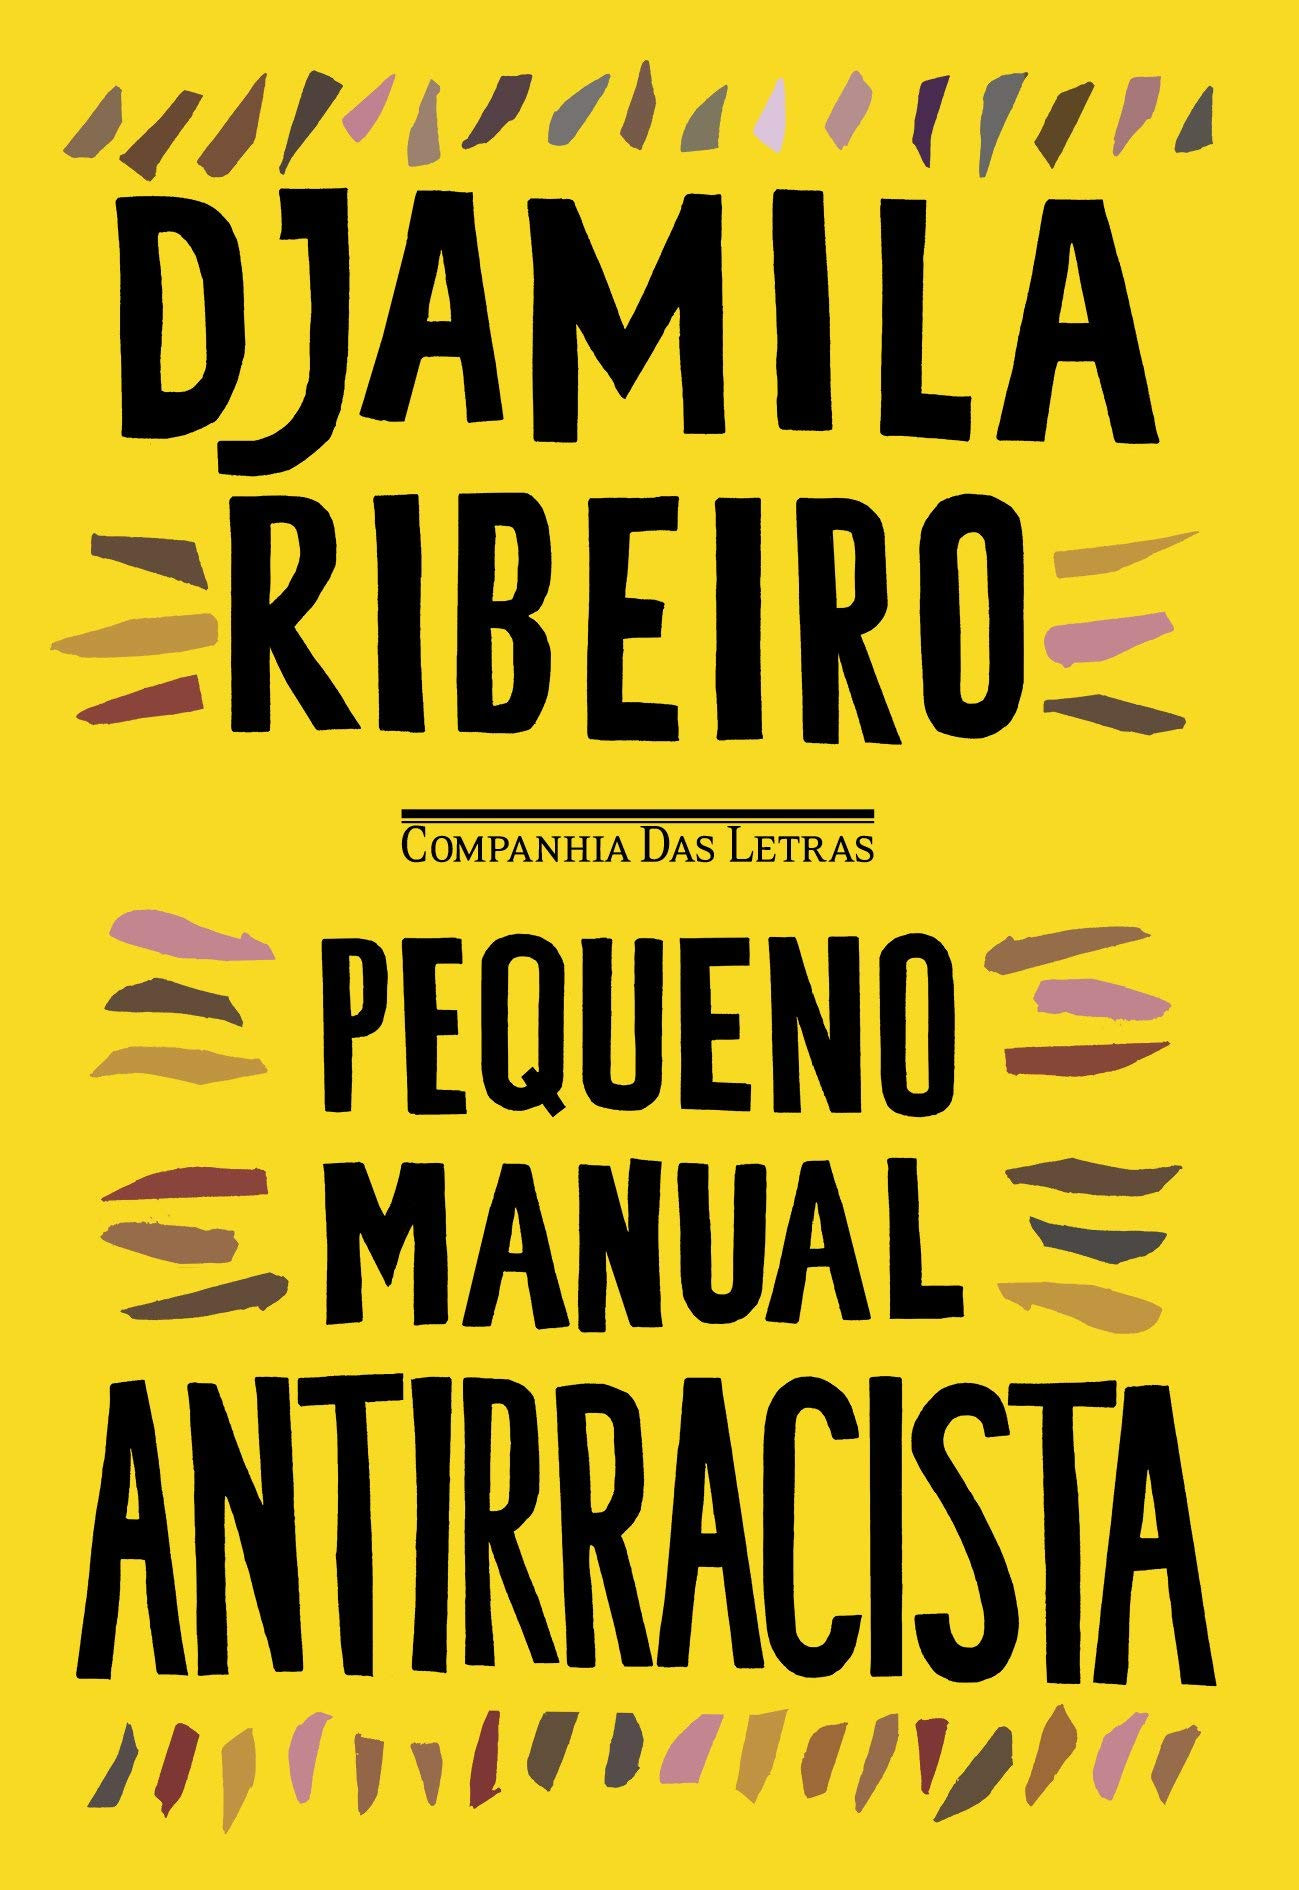 Capa de livro com fundo amarelo e os escritos em preto “Djamila Ribeiro” e “Pequeno Manual Antirracista”. No centro, a pequena logomarca da Editora Companhia das Letras.